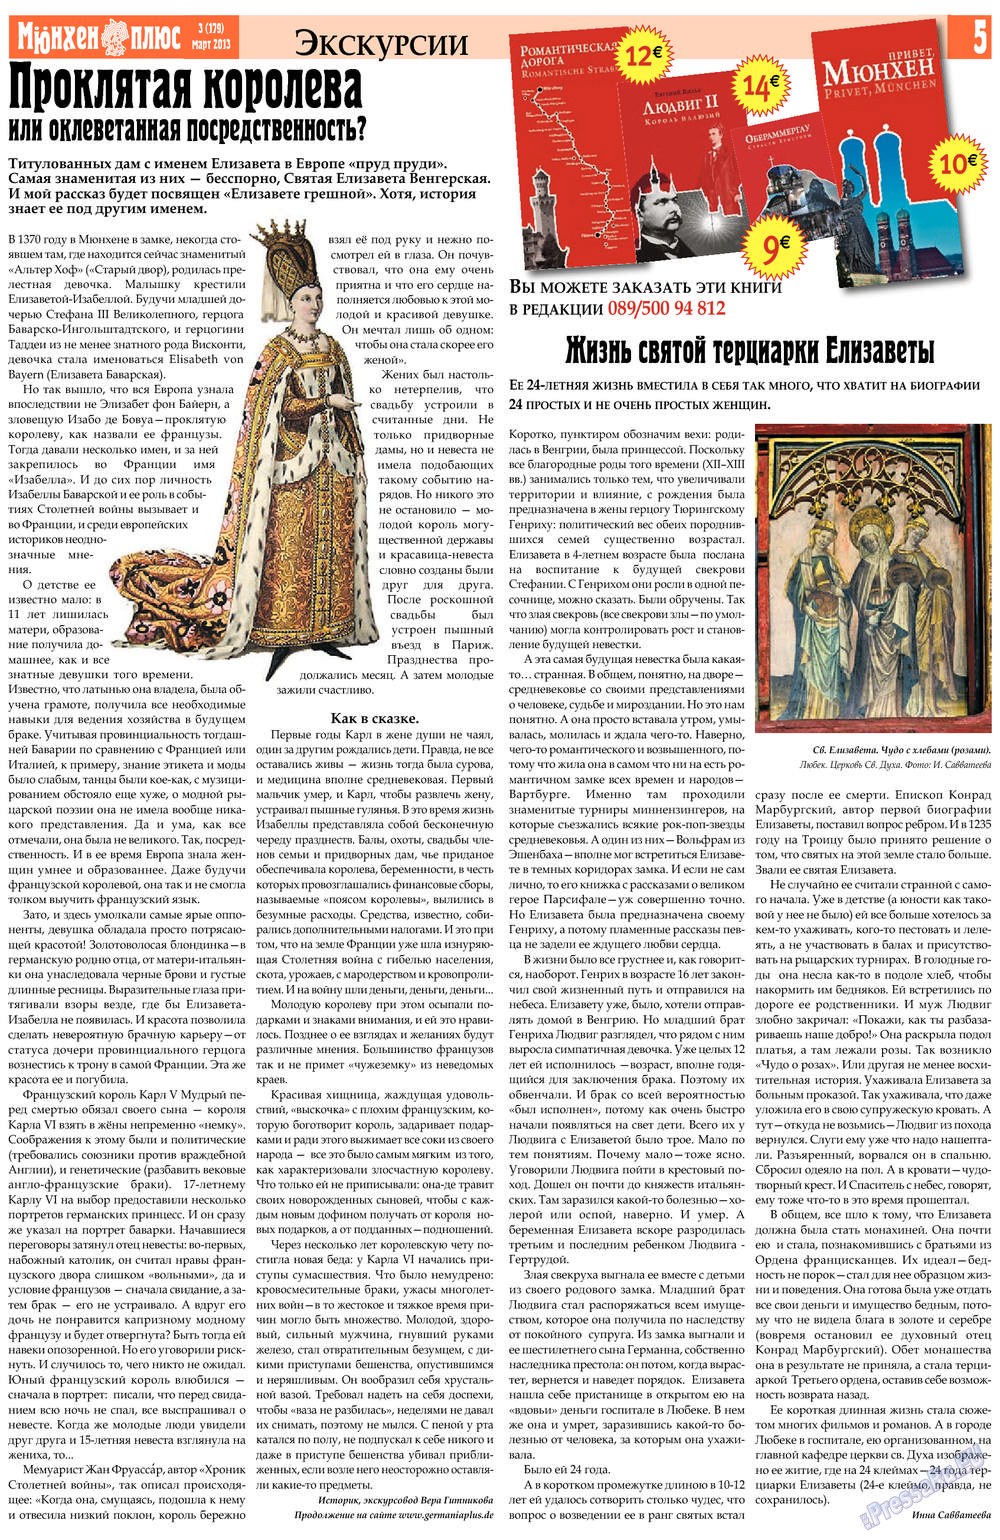 Германия плюс, газета. 2013 №3 стр.5